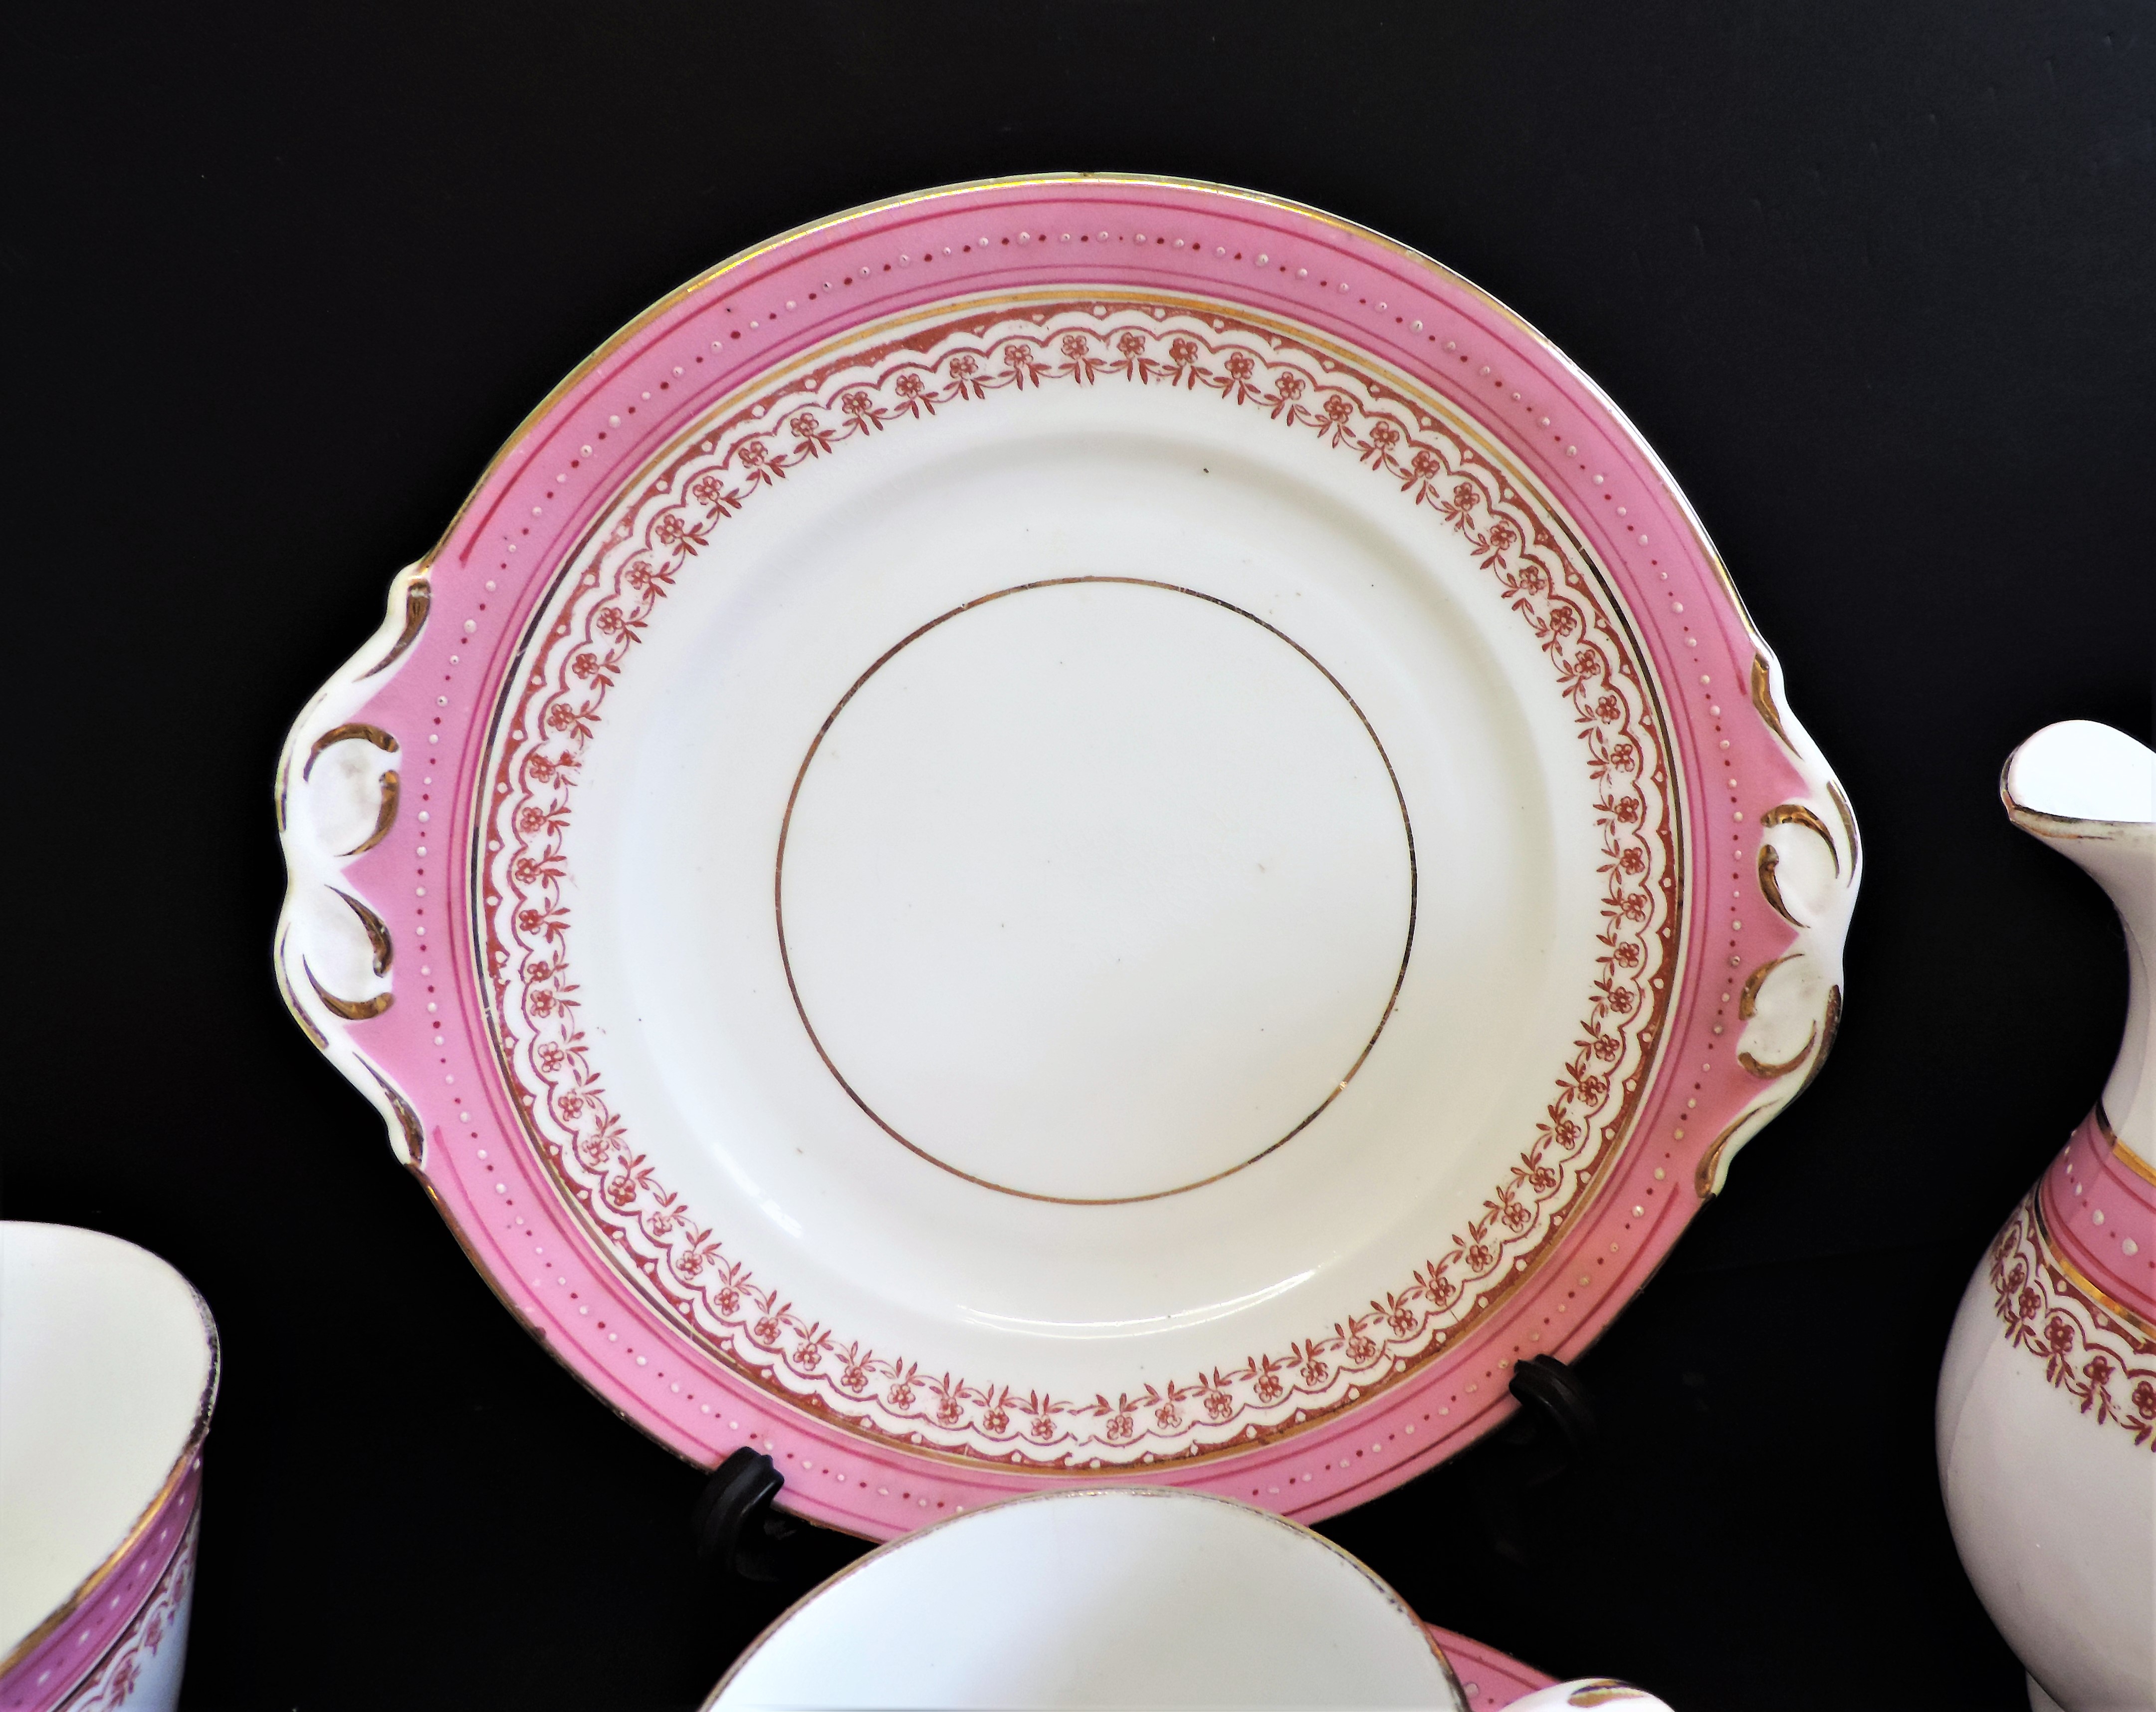 Vintage 19 piece Porcelain Breakfast/Tea Set for 4 People - Image 13 of 24